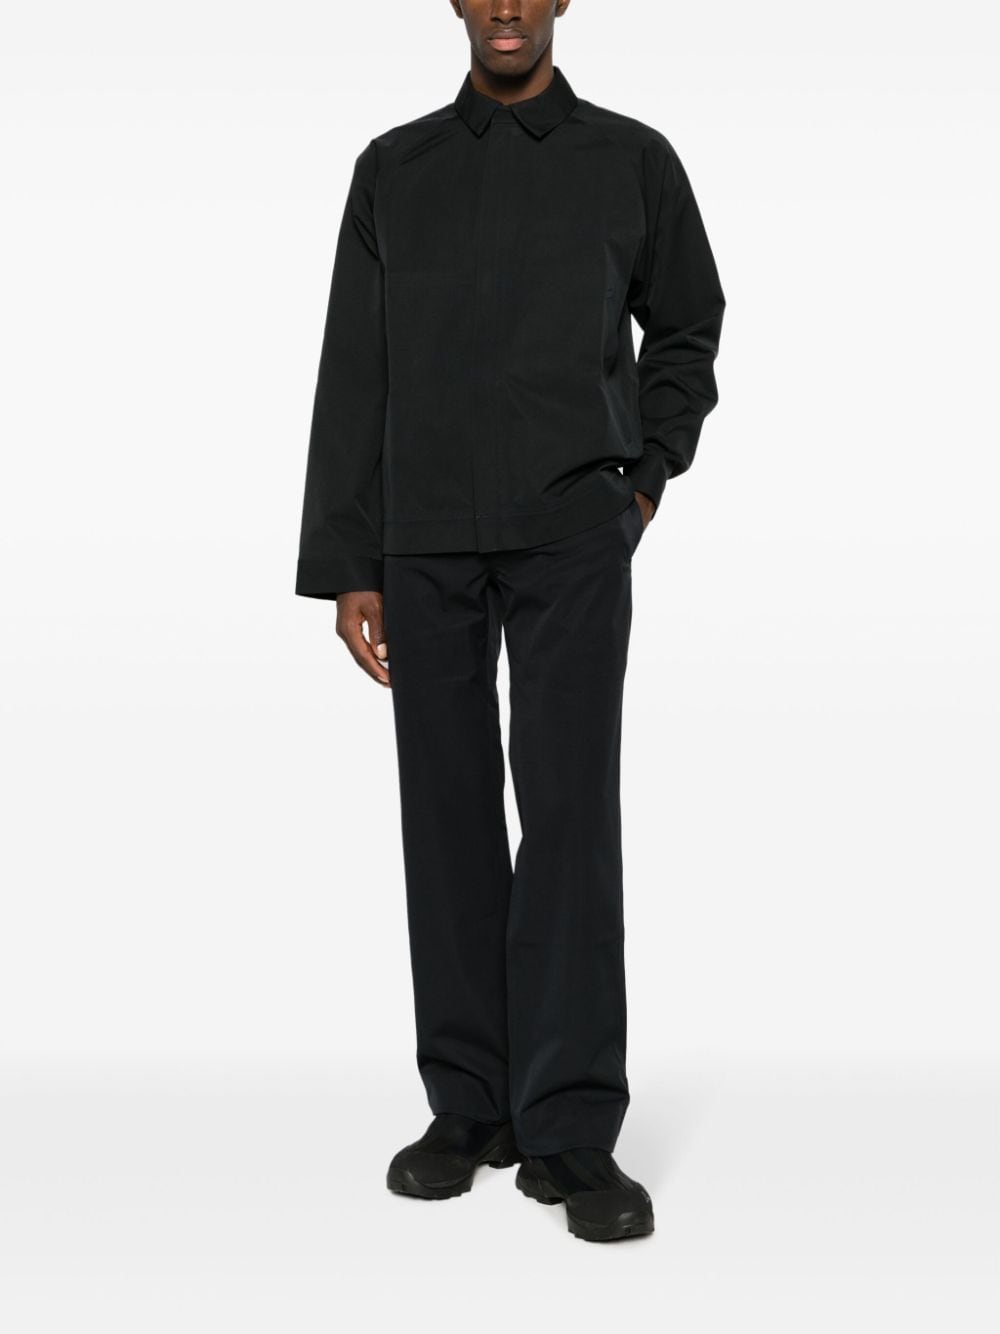 BLAEST Standal ziped shirt jacket - Zwart